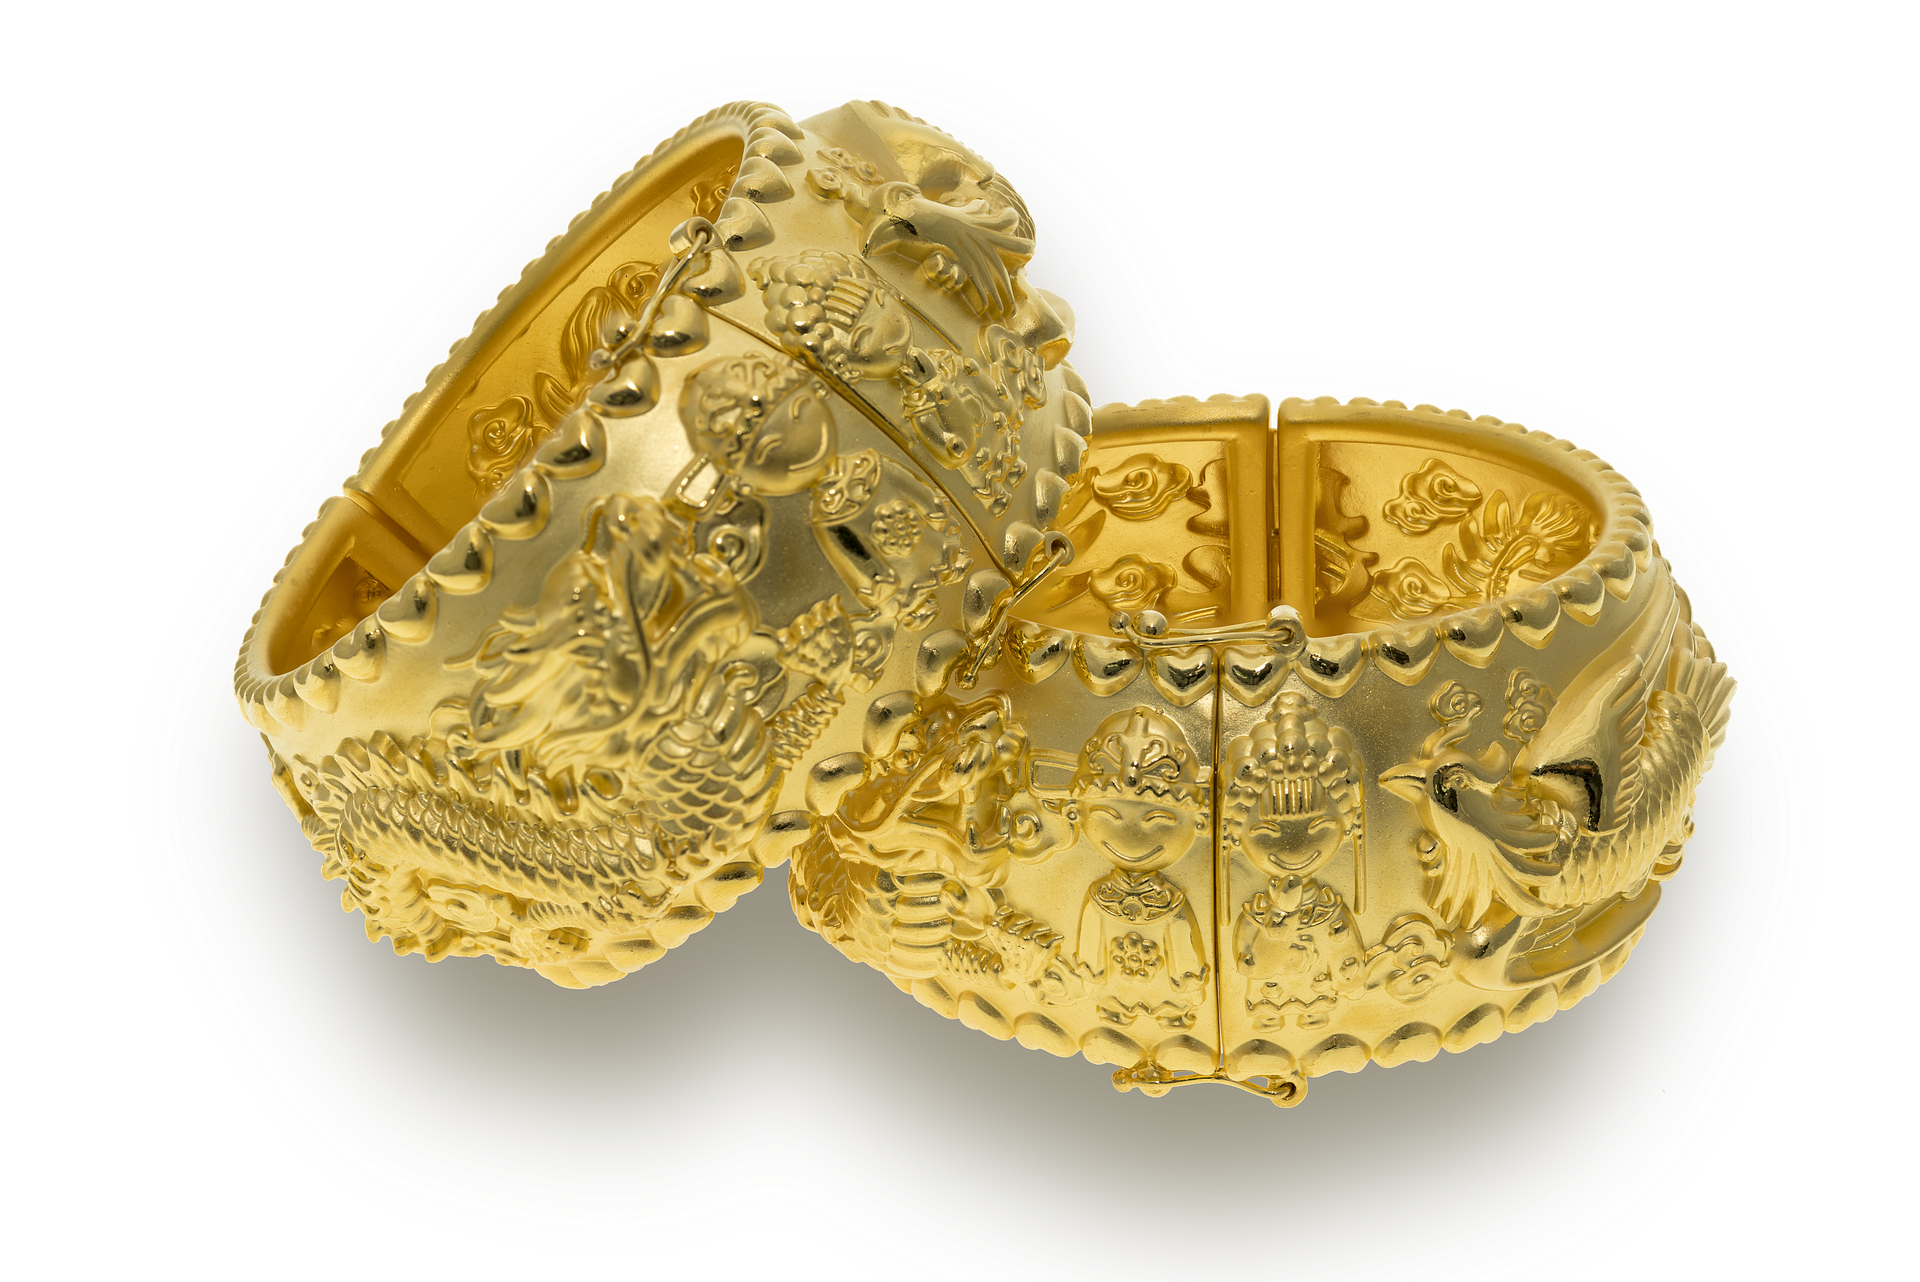 La imagen muestra dos brazaletes dorados con dibujos y cenefas en relieve